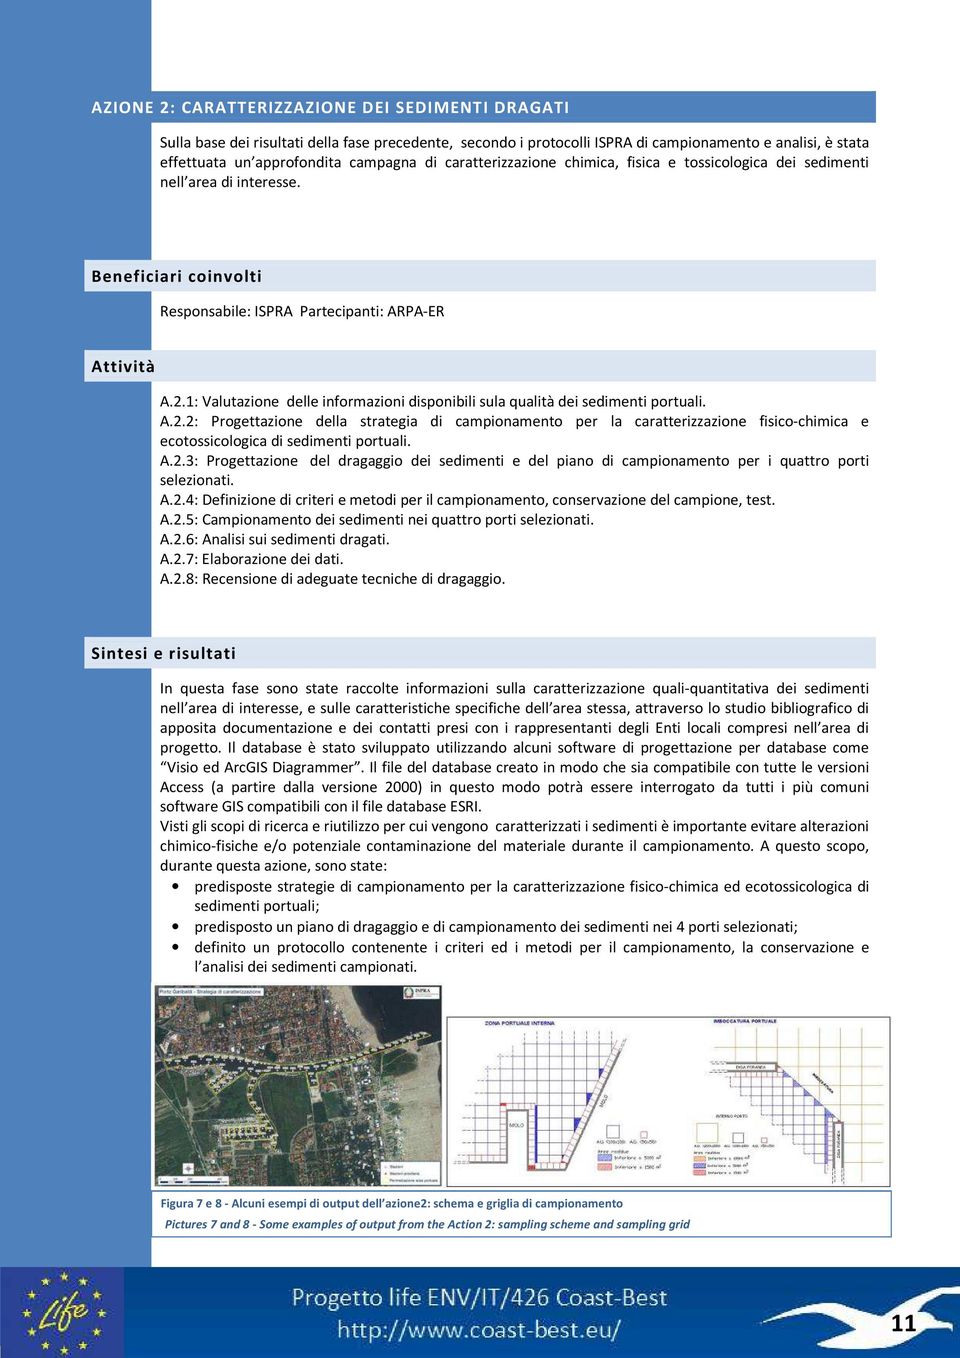 1: Valutazione delle informazioni disponibili sula qualità dei sedimenti portuali. A.2.